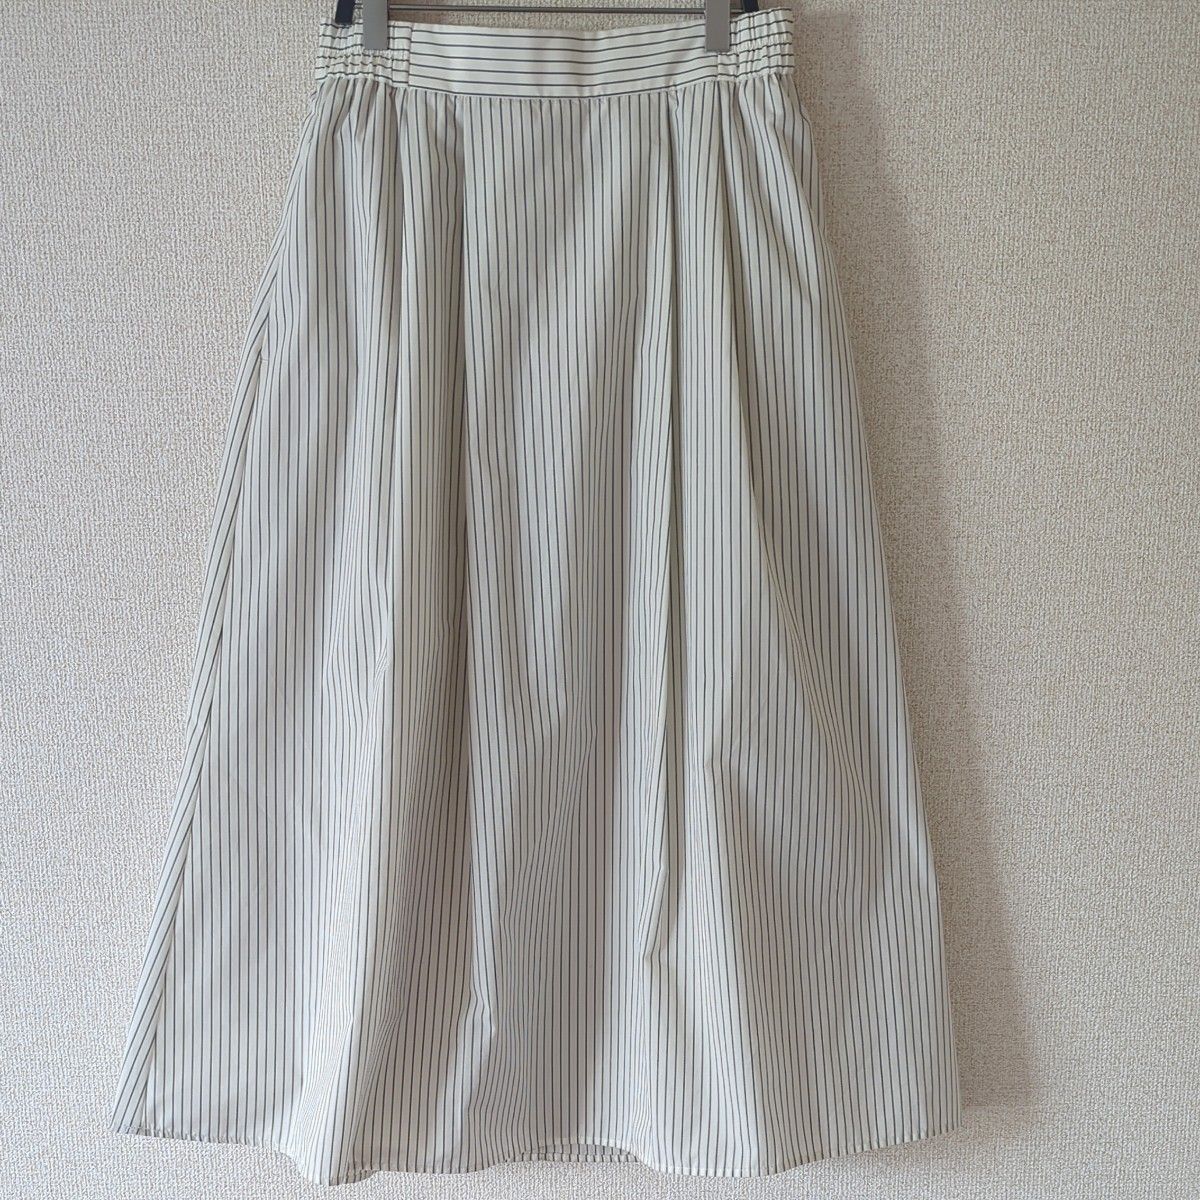 クーポン適用。GUジーユーロングスカート。白。ストラップMサイズ 春夏 スカート